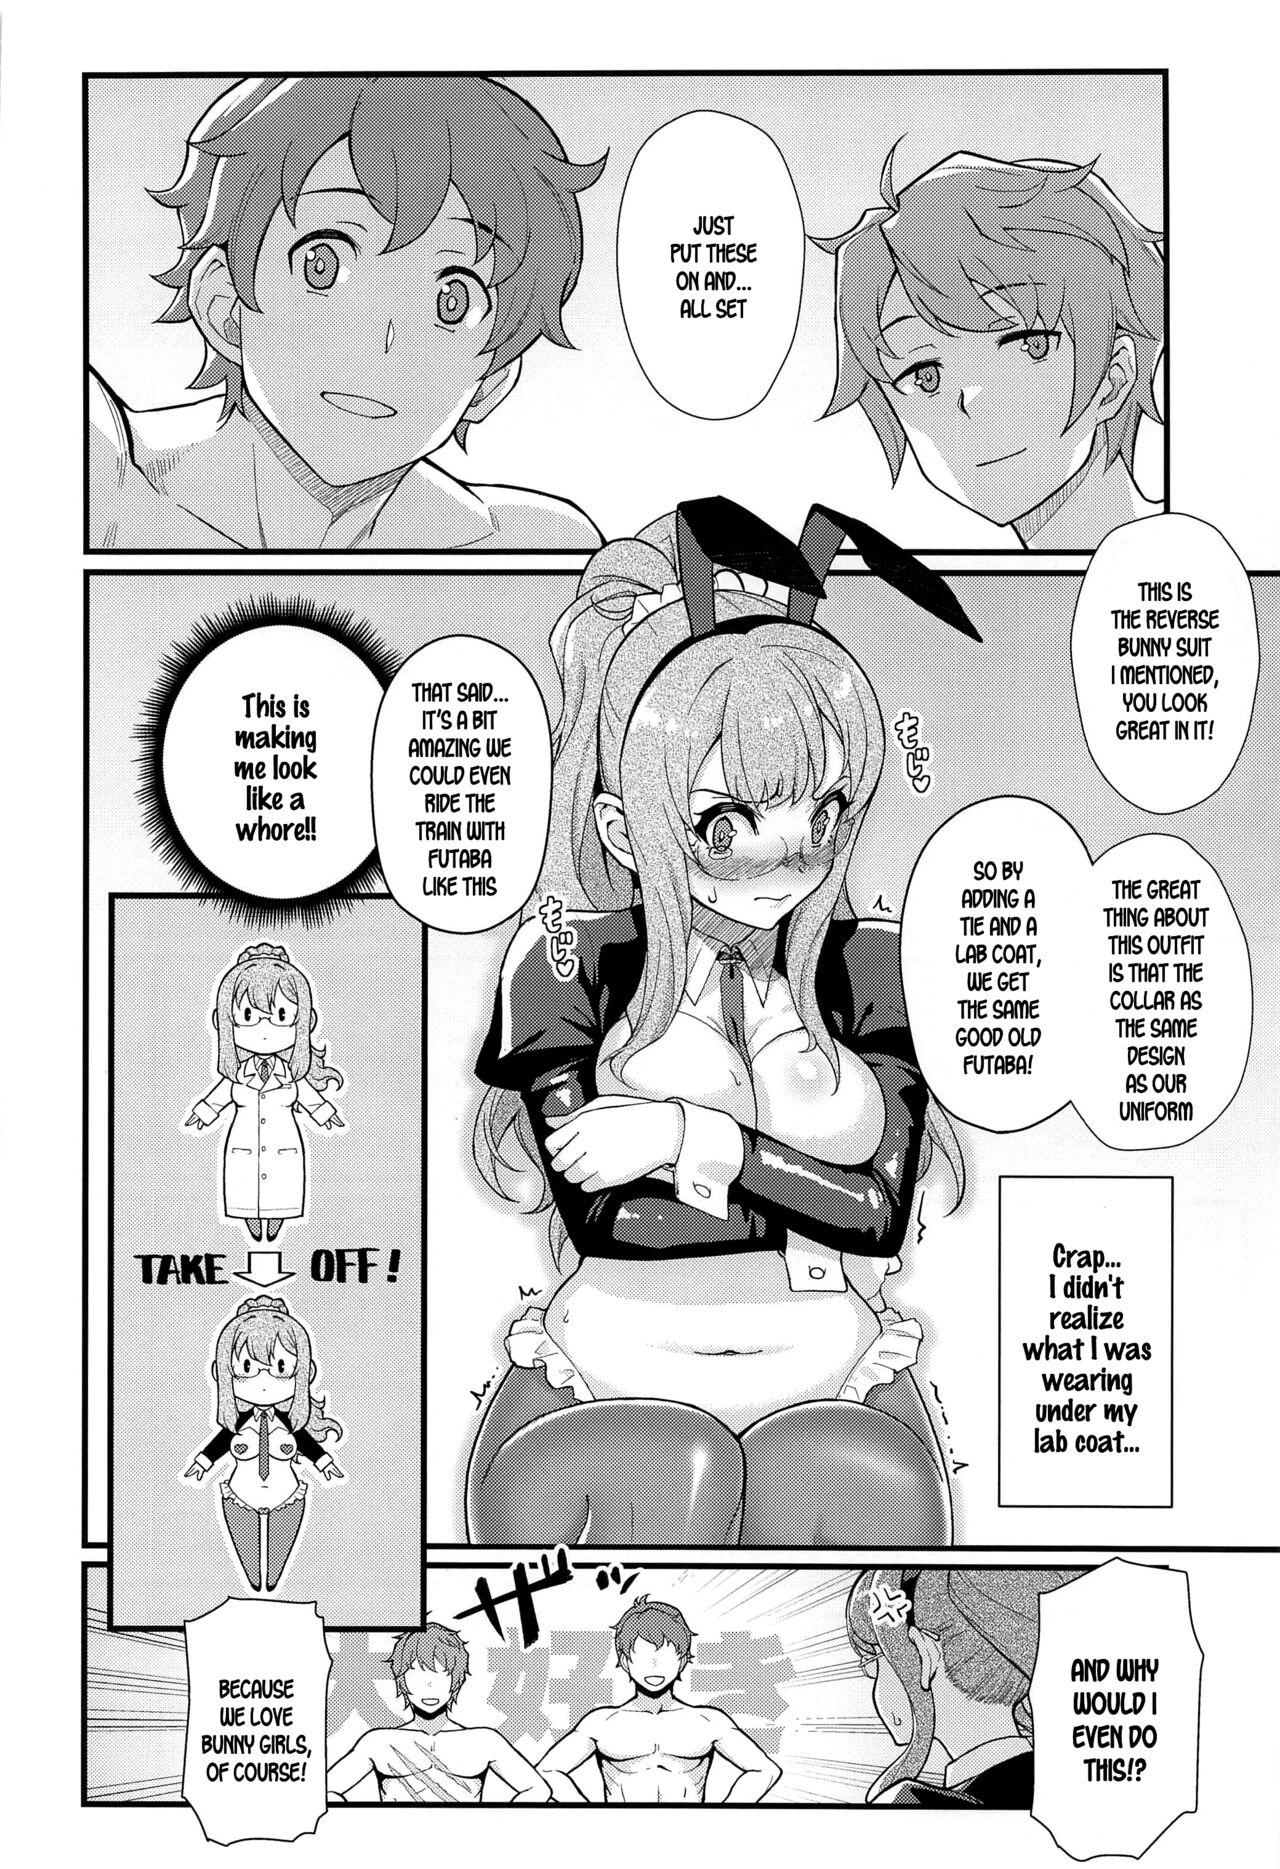 Oil MULTI REALITY - Seishun buta yarou wa bunny girl senpai no yume o minai Juggs - Page 9